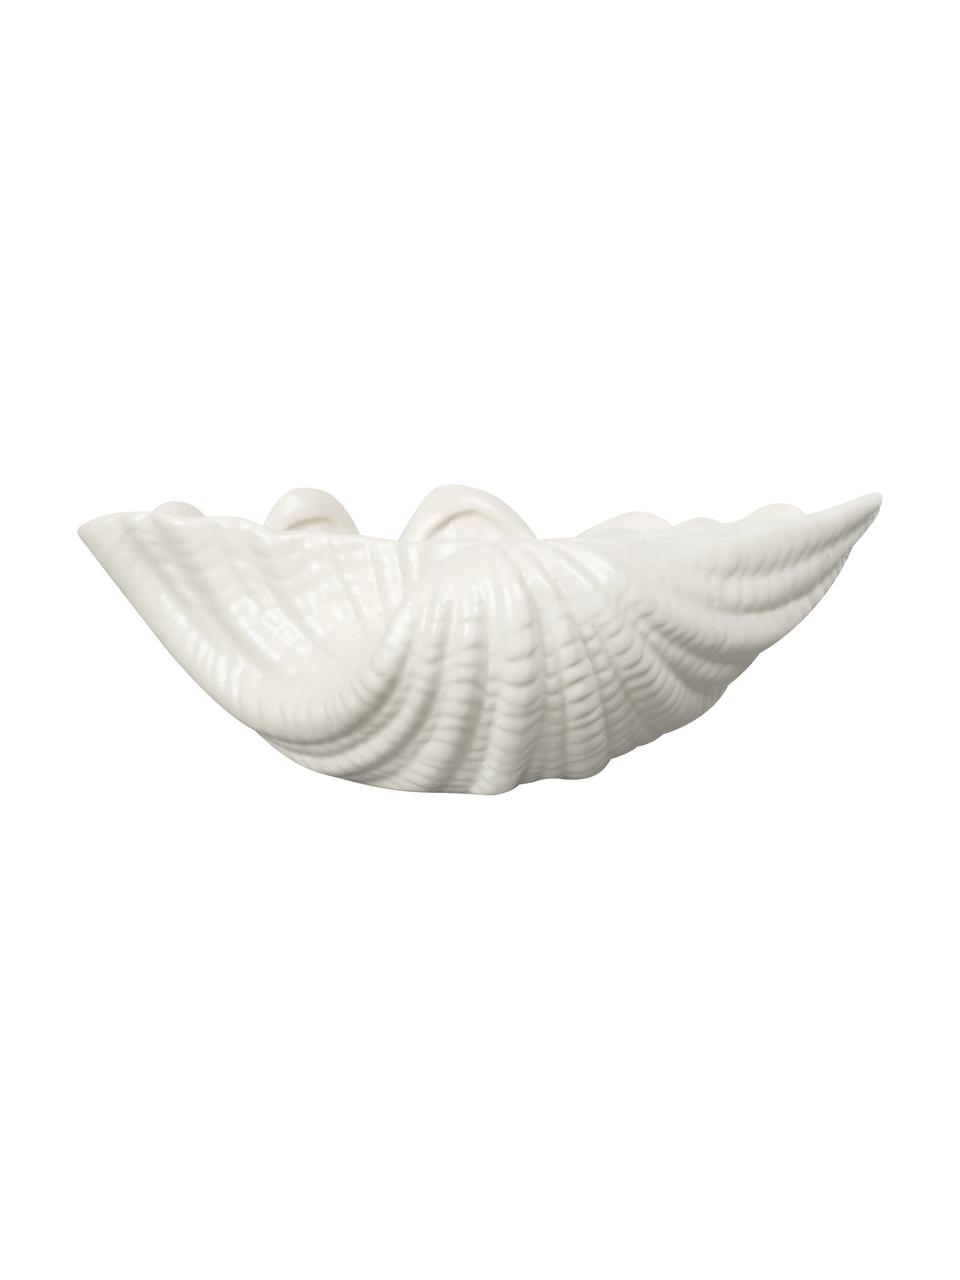 Schale Shell aus Dolomit in Weiss, B 24 cm, Dolomit, Weiss, B 23 x H 8 cm